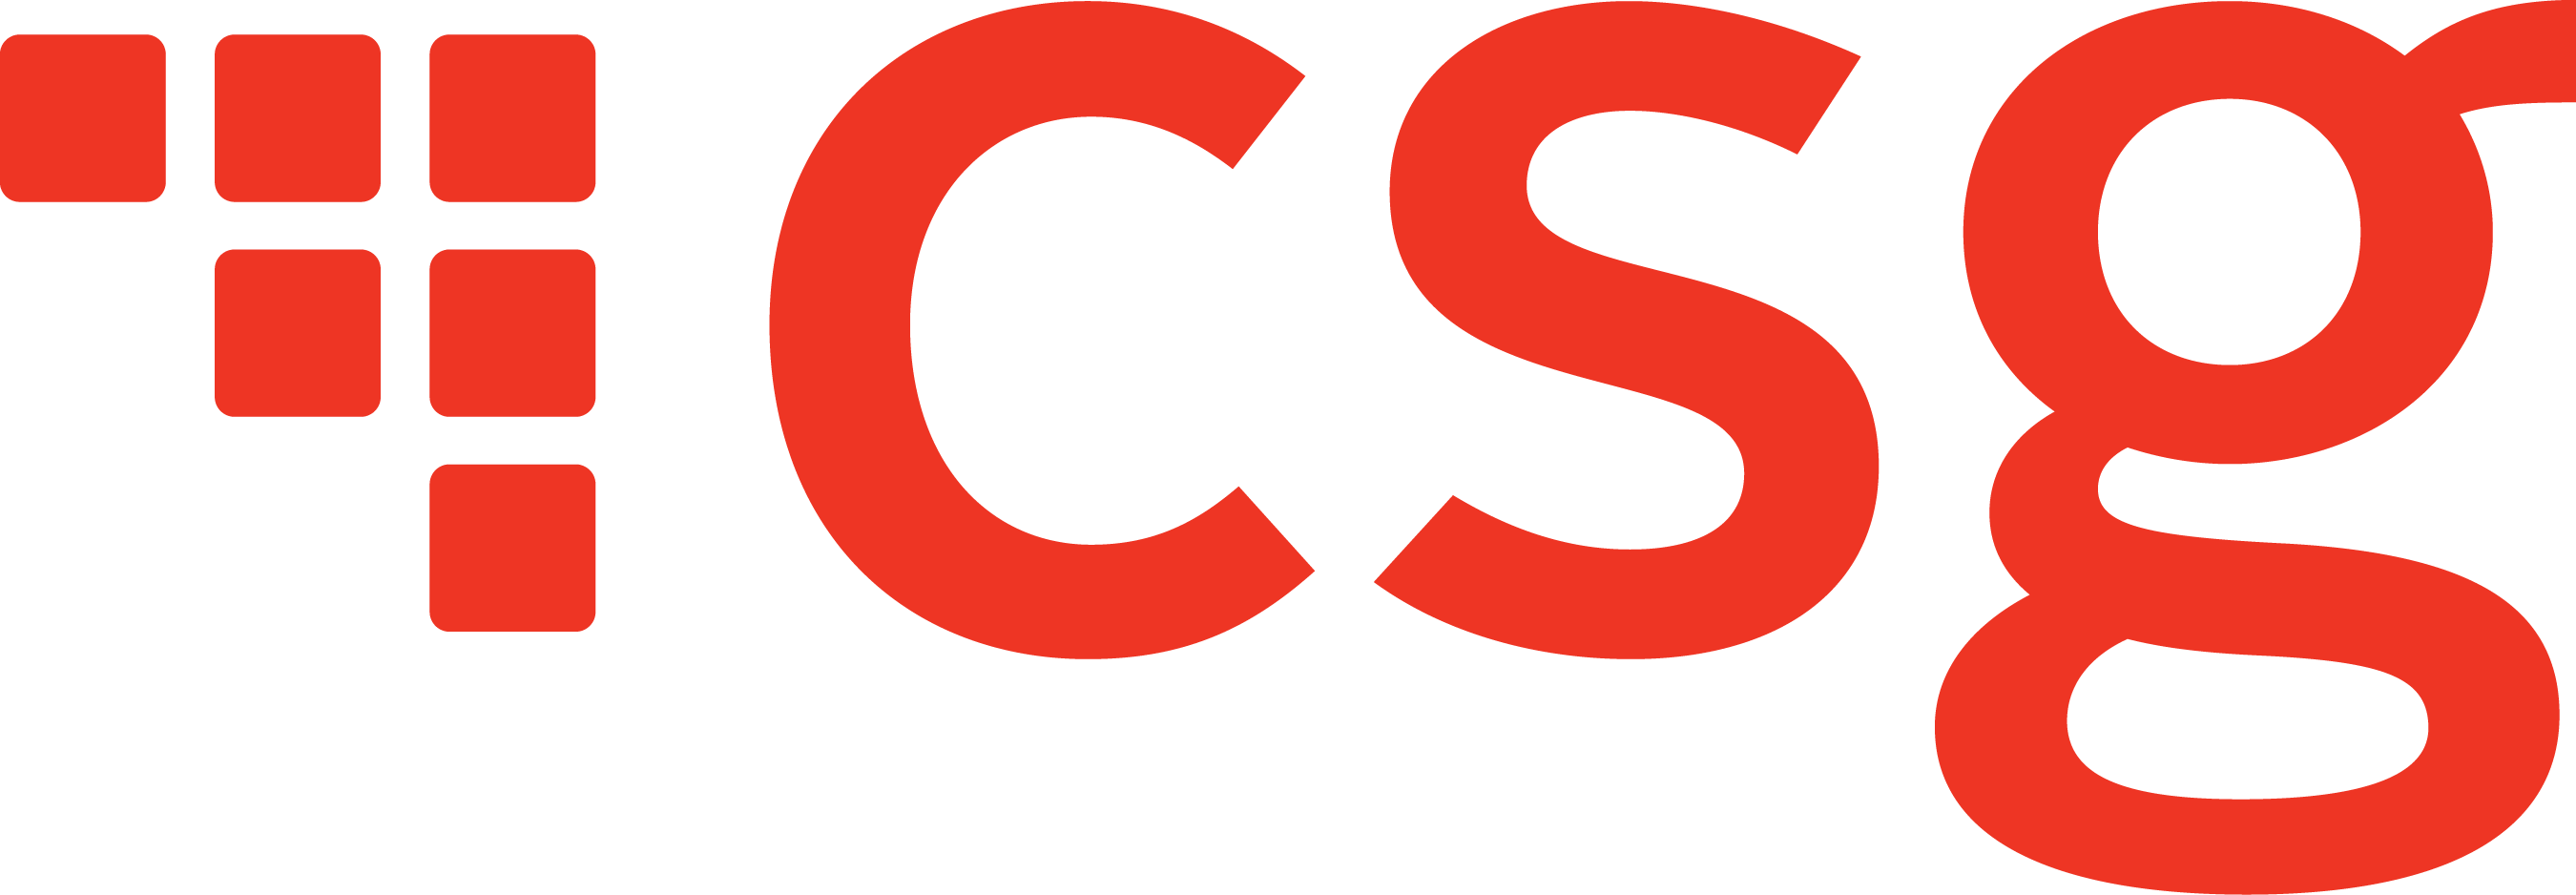 Csg Logo Transparent (2700x938)